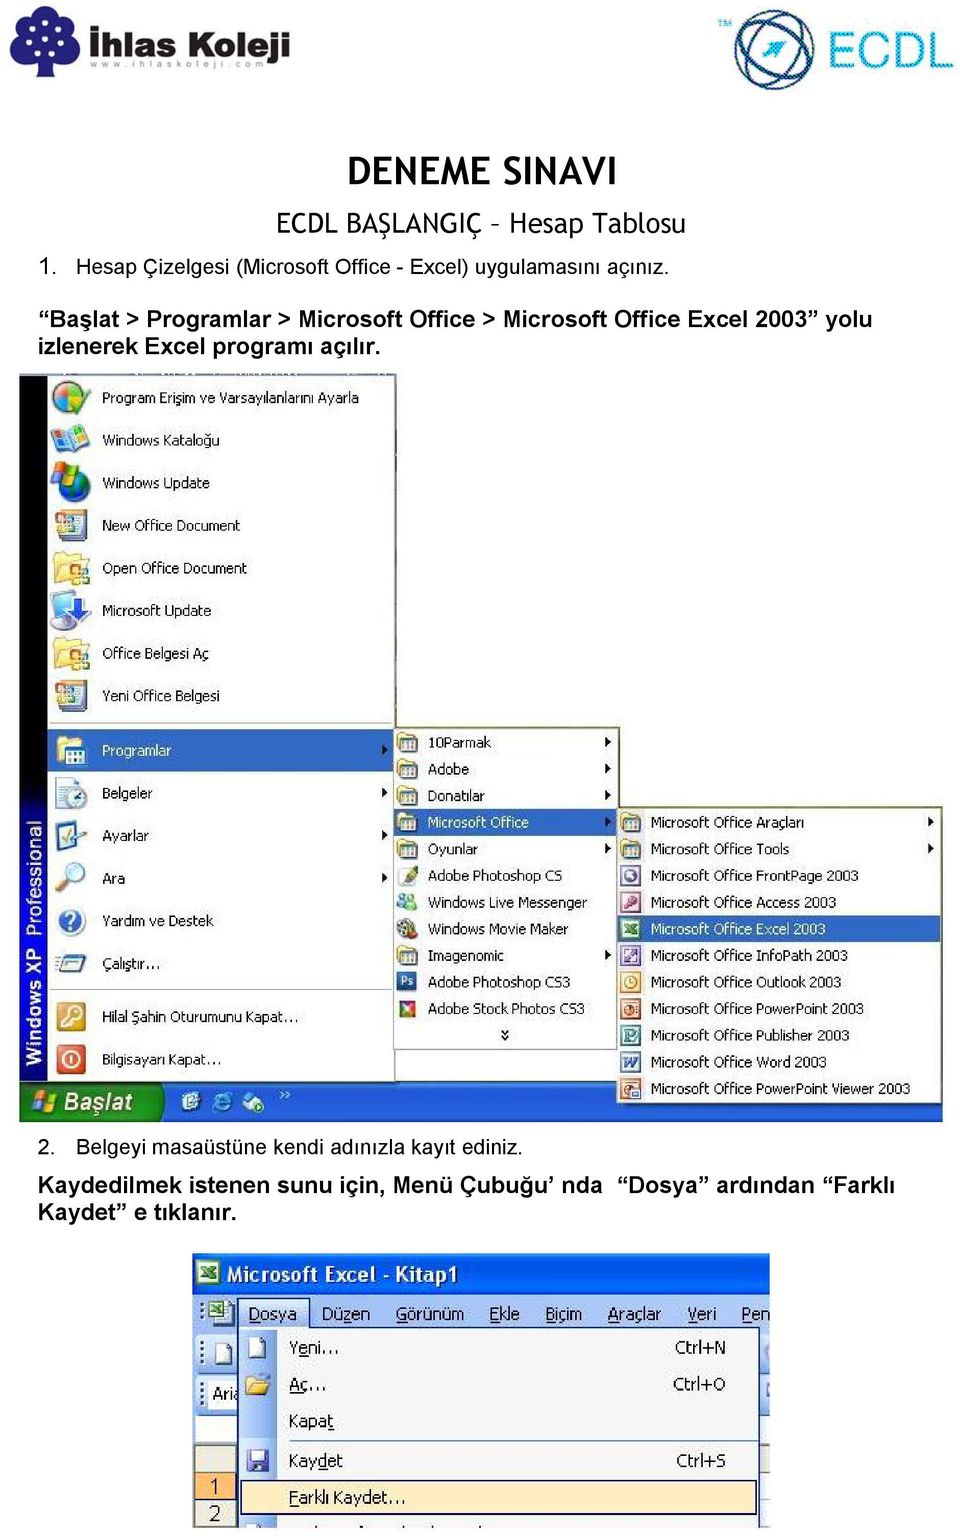 Başlat > Programlar > Microsoft Office > Microsoft Office Excel 2003 yolu izlenerek